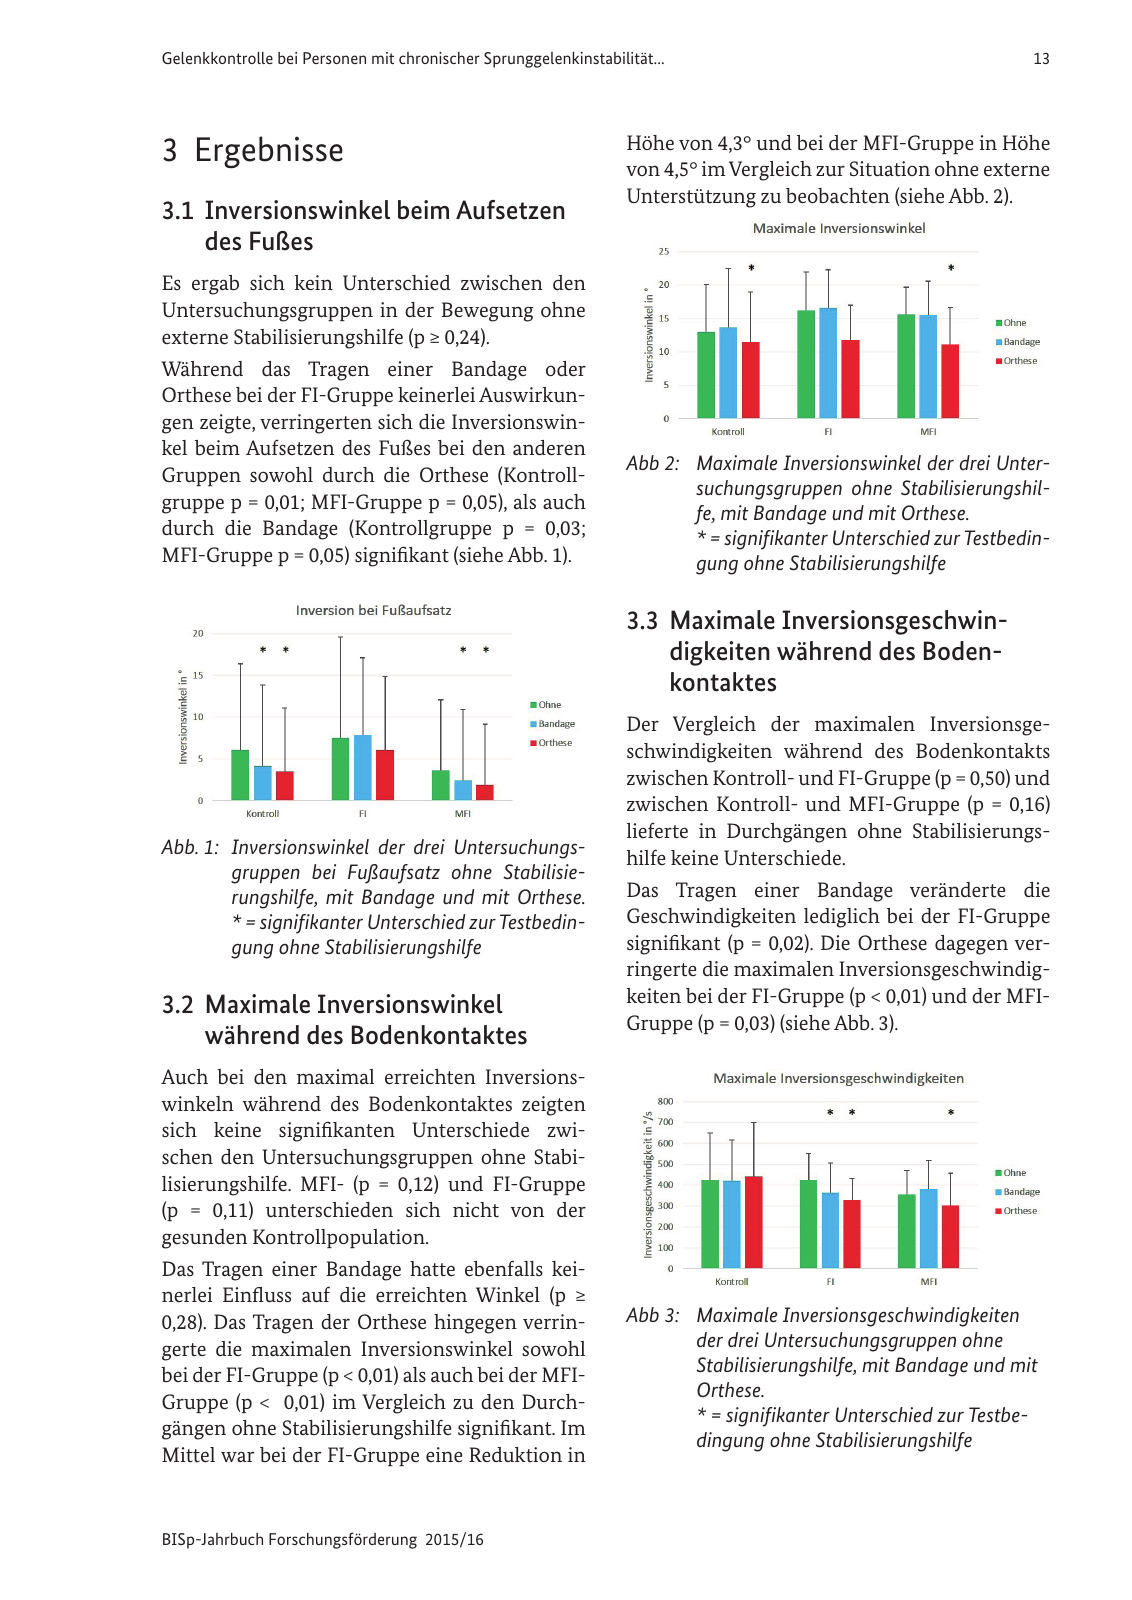 Vorschau BISp-Jahrbuch Forschungsförderung 2015/16 Seite 15